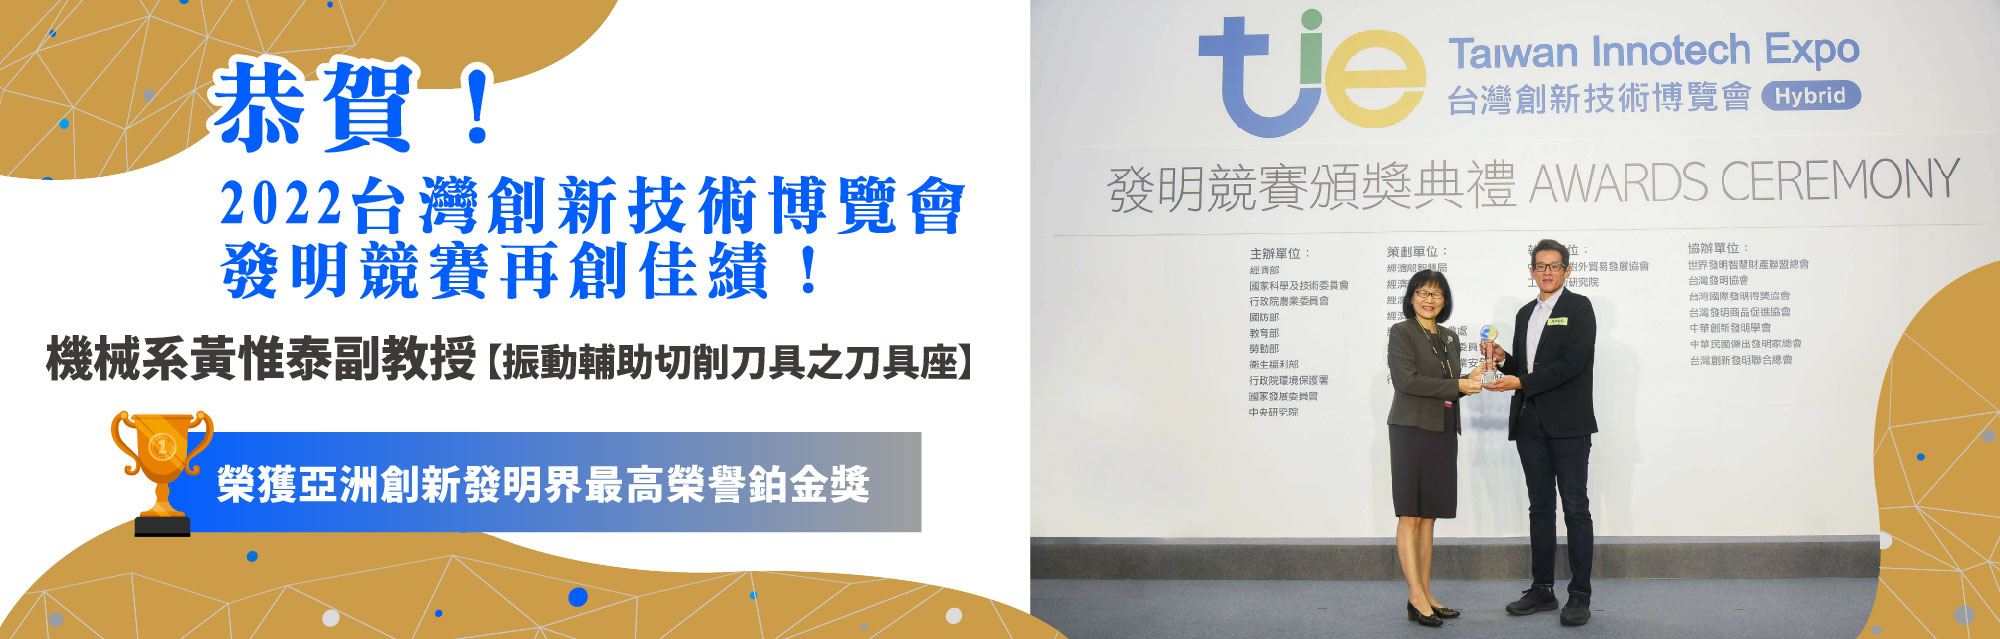 2022台灣創新技術博覽會獲獎